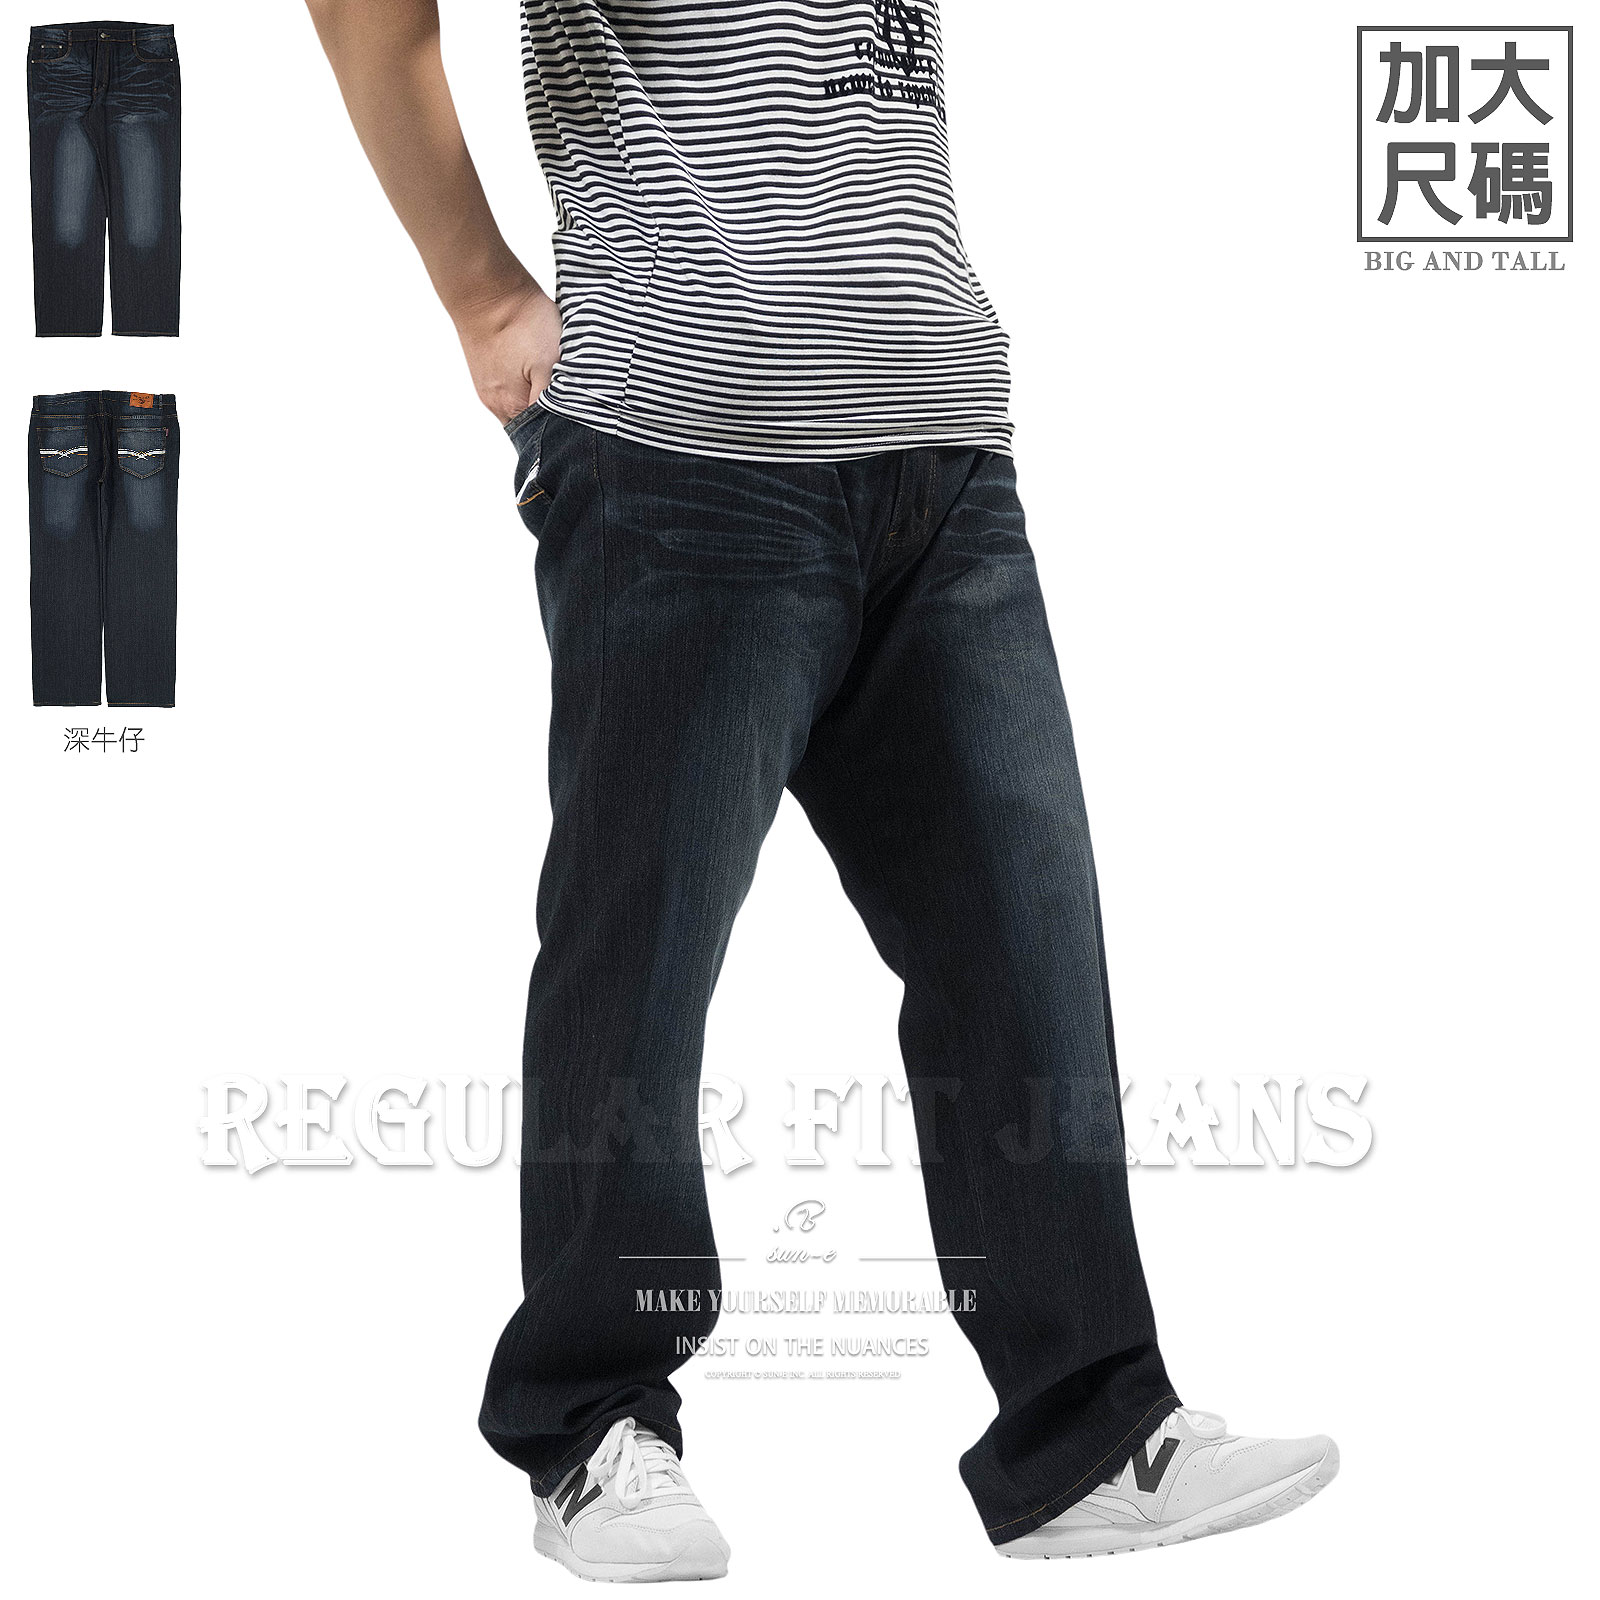 加大尺碼牛仔褲 丹寧牛仔長褲 中直筒褲 彈性長褲 大尺碼長褲 大尺碼男裝 大腰牛仔褲 刷紋刷白牛仔褲 車繡後口袋 Big And Tall Jeans Regular Fit Jeans Denim Pants Stretch Jeans Embroidered Pockets (307-7566-21)深牛仔 腰圍:42~50英吋 (127~150公分) 男 [實體店面保障]sun-e